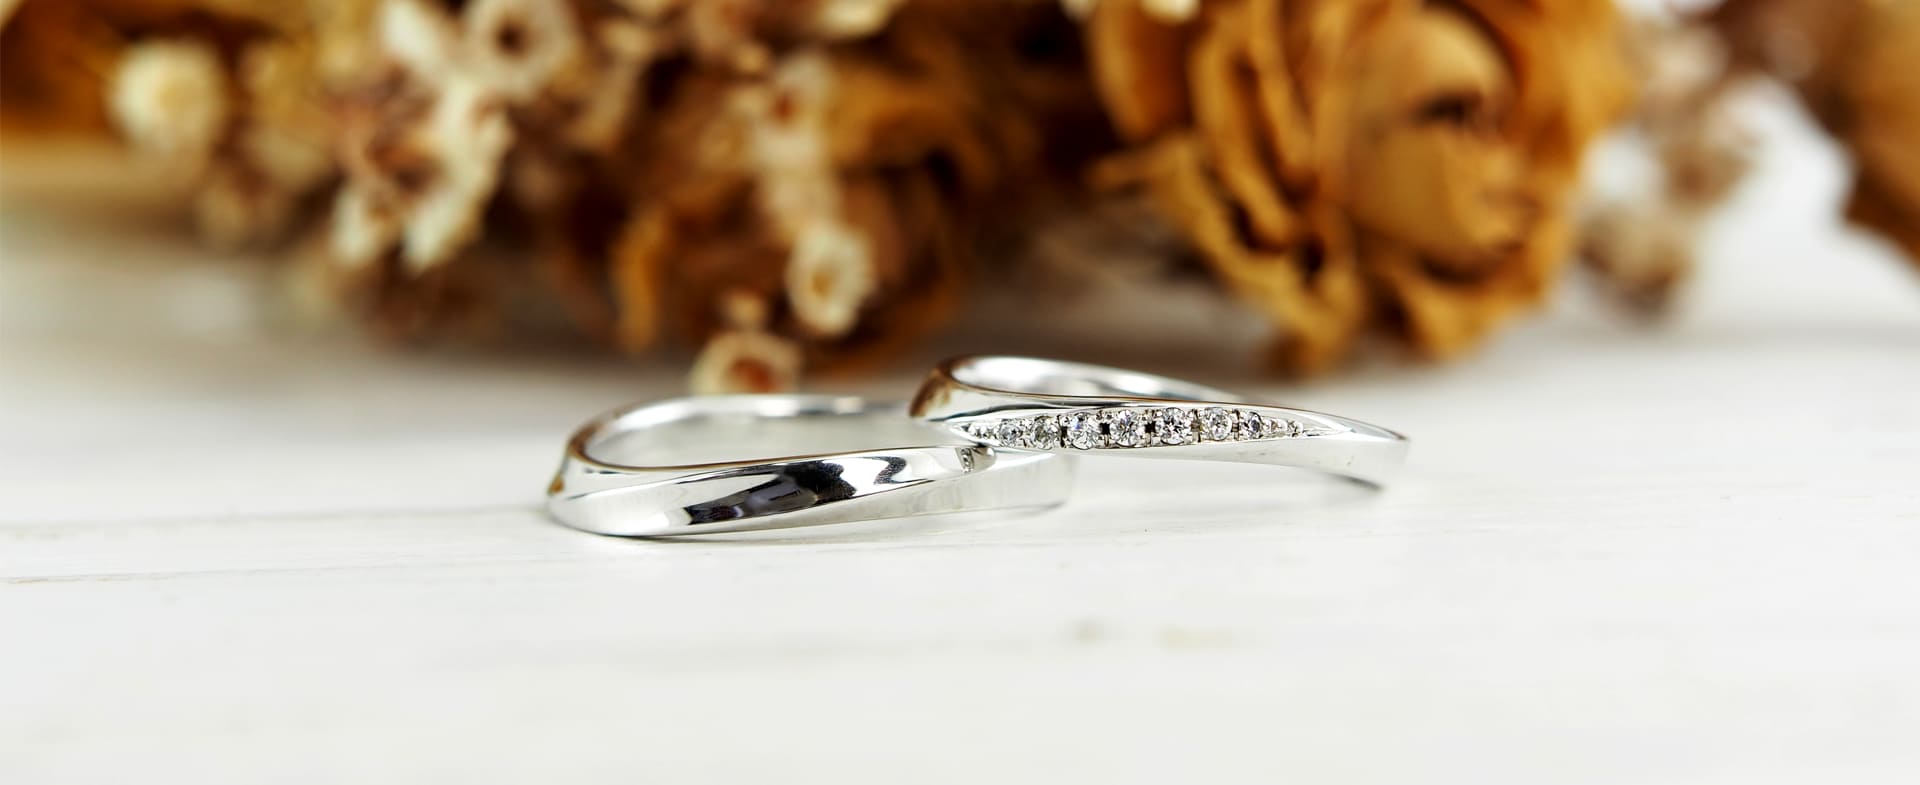 久留米市のジュエリーセレクトショップCHARIScr8では様々なデザインの結婚指輪をご紹介しています。お客様の結婚指輪選びを最大限のお手伝いをするために幅広いジャンルをご用意。フルオーダーメイドリングからお店にあるデザインにアレンジを加えてお作りするセミオーダーアレンジ結婚指輪まで自由自在です。おふたりにご納得いただけるよう結婚指輪選びのお手伝いをさせていただきます。